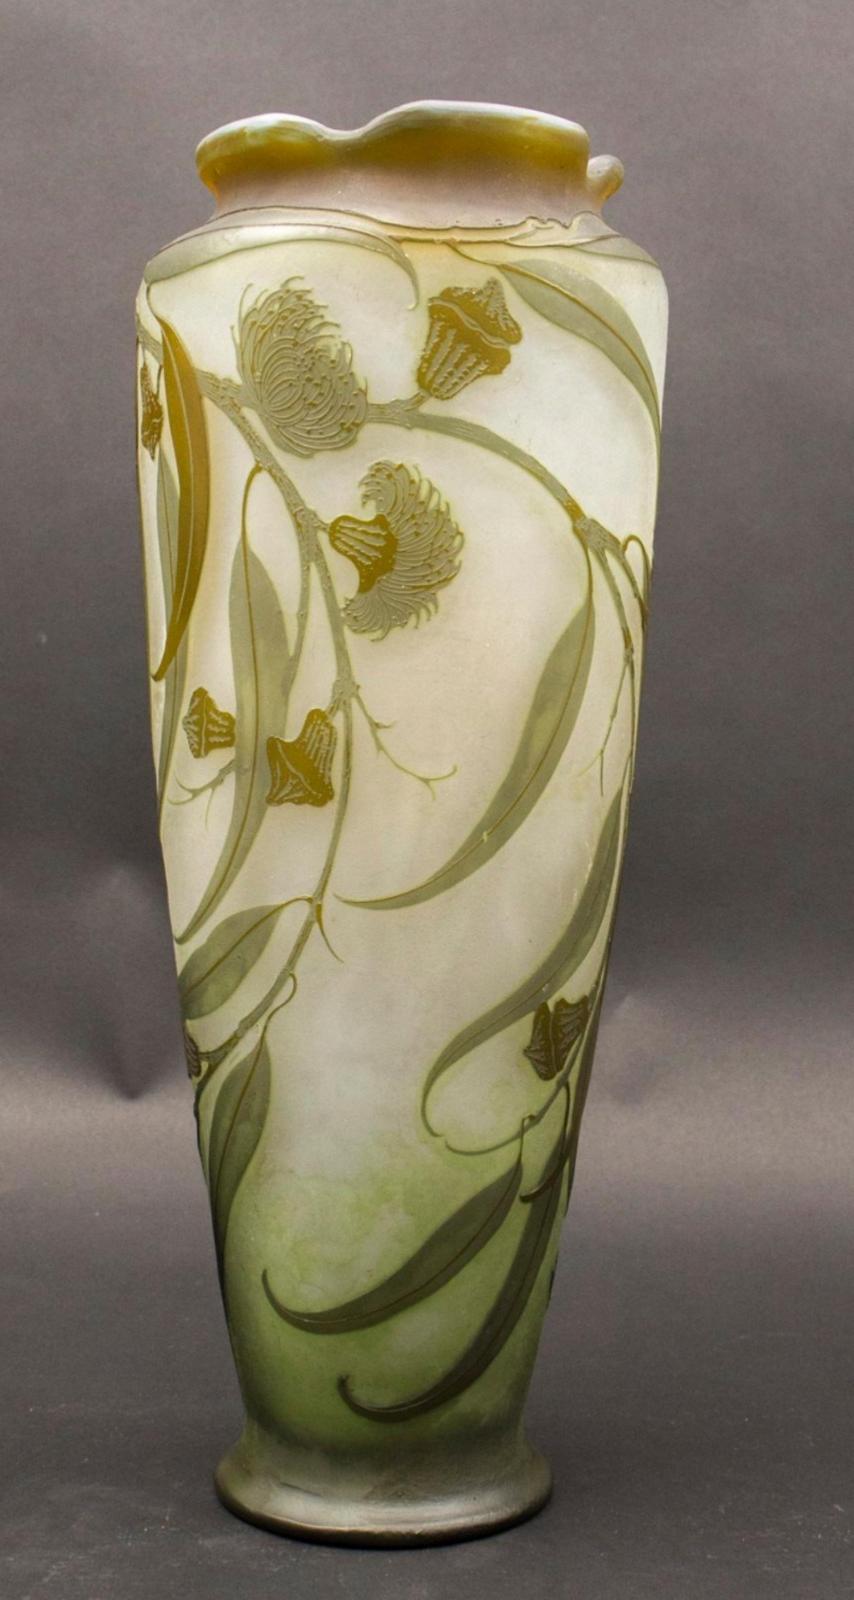 Hand-Crafted Émile Gallé Art Nouveau Vase With Floral Decoration, Nancy, Around 1900